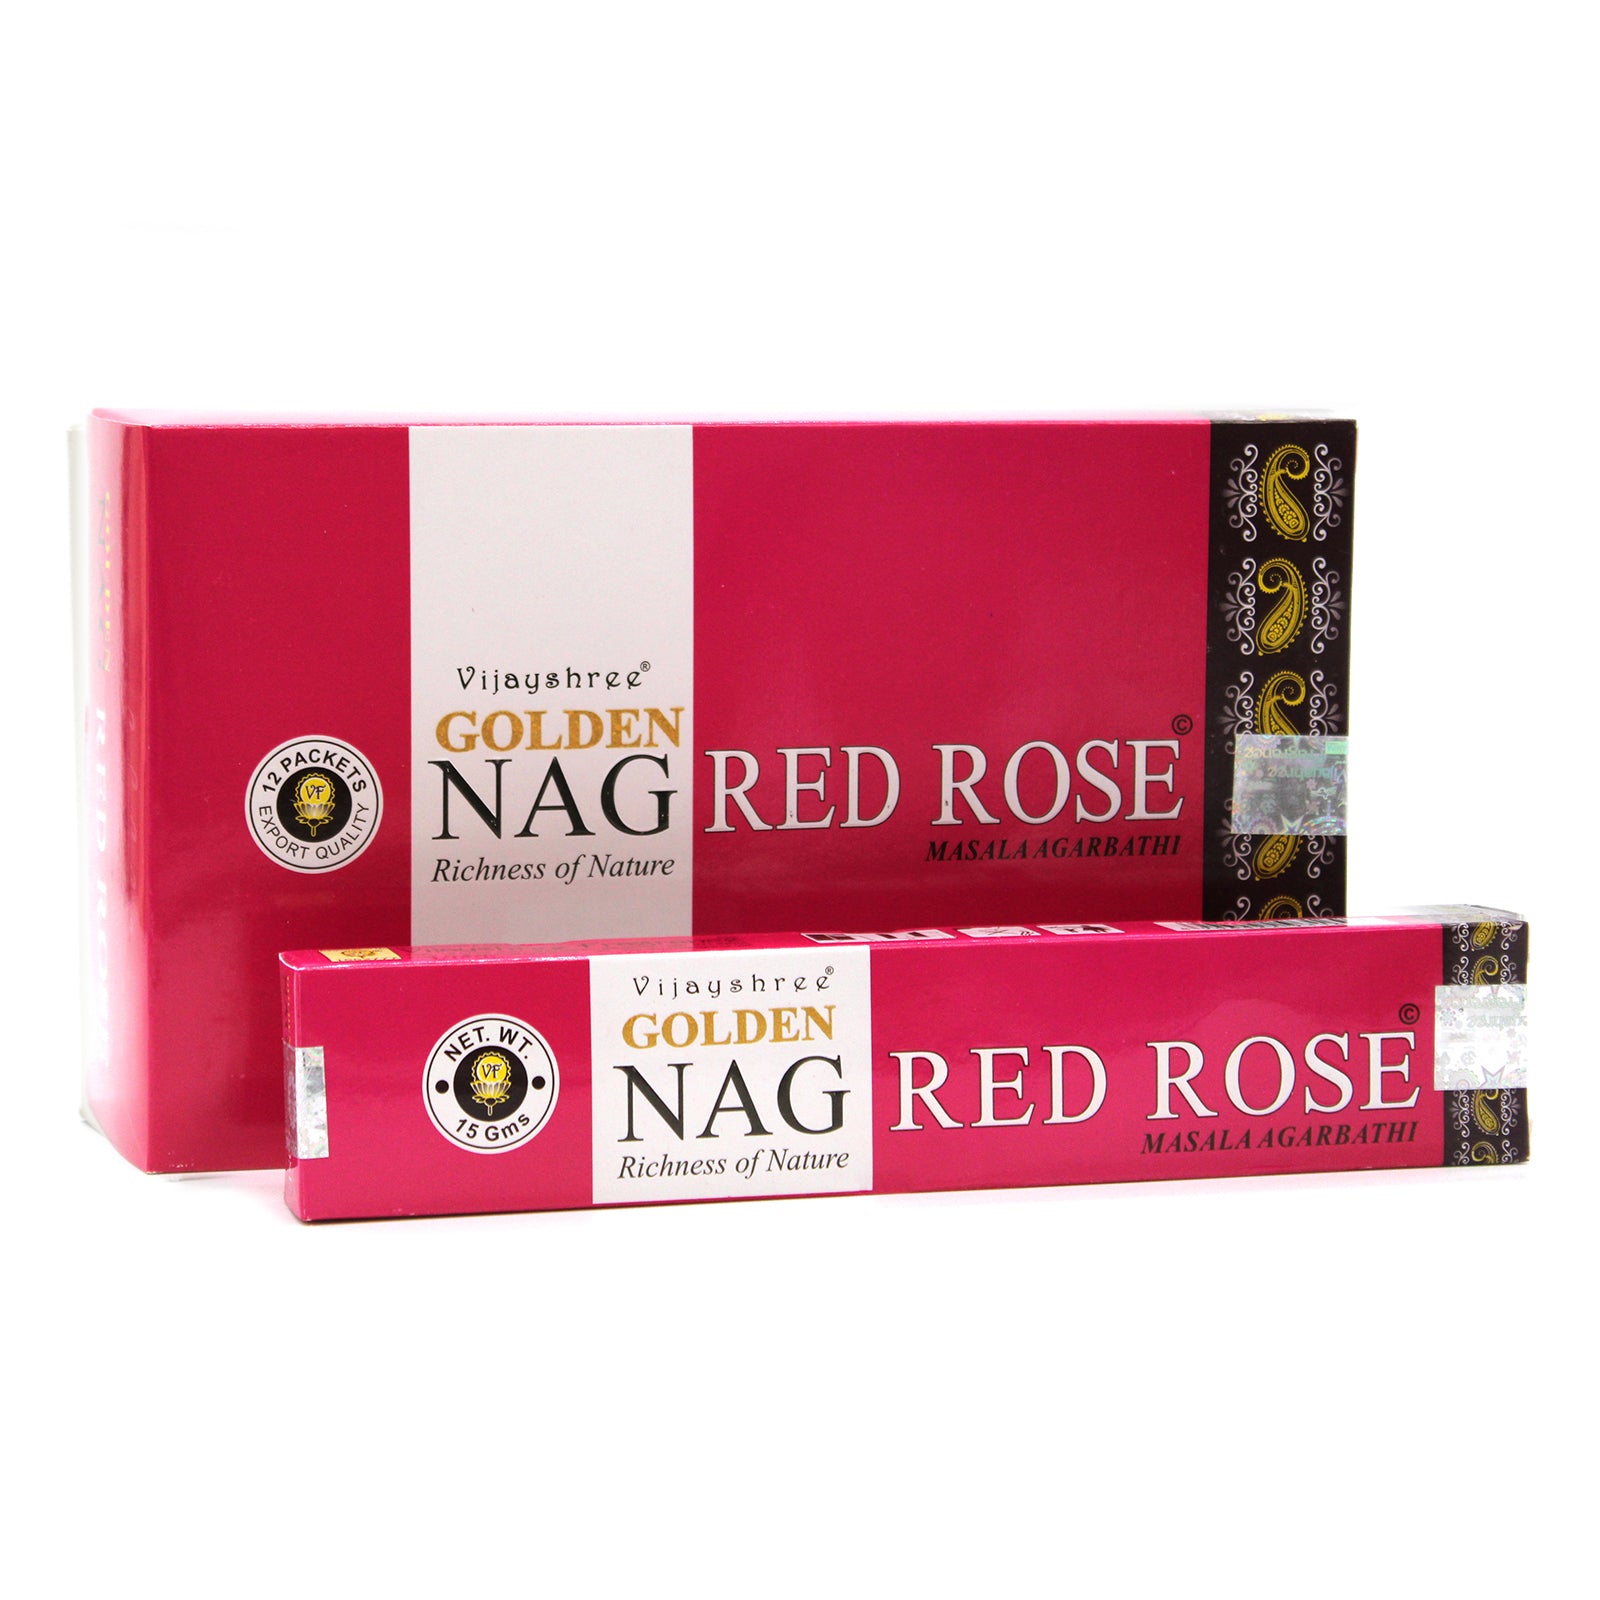 View 15g Golden Nag Red Rose information